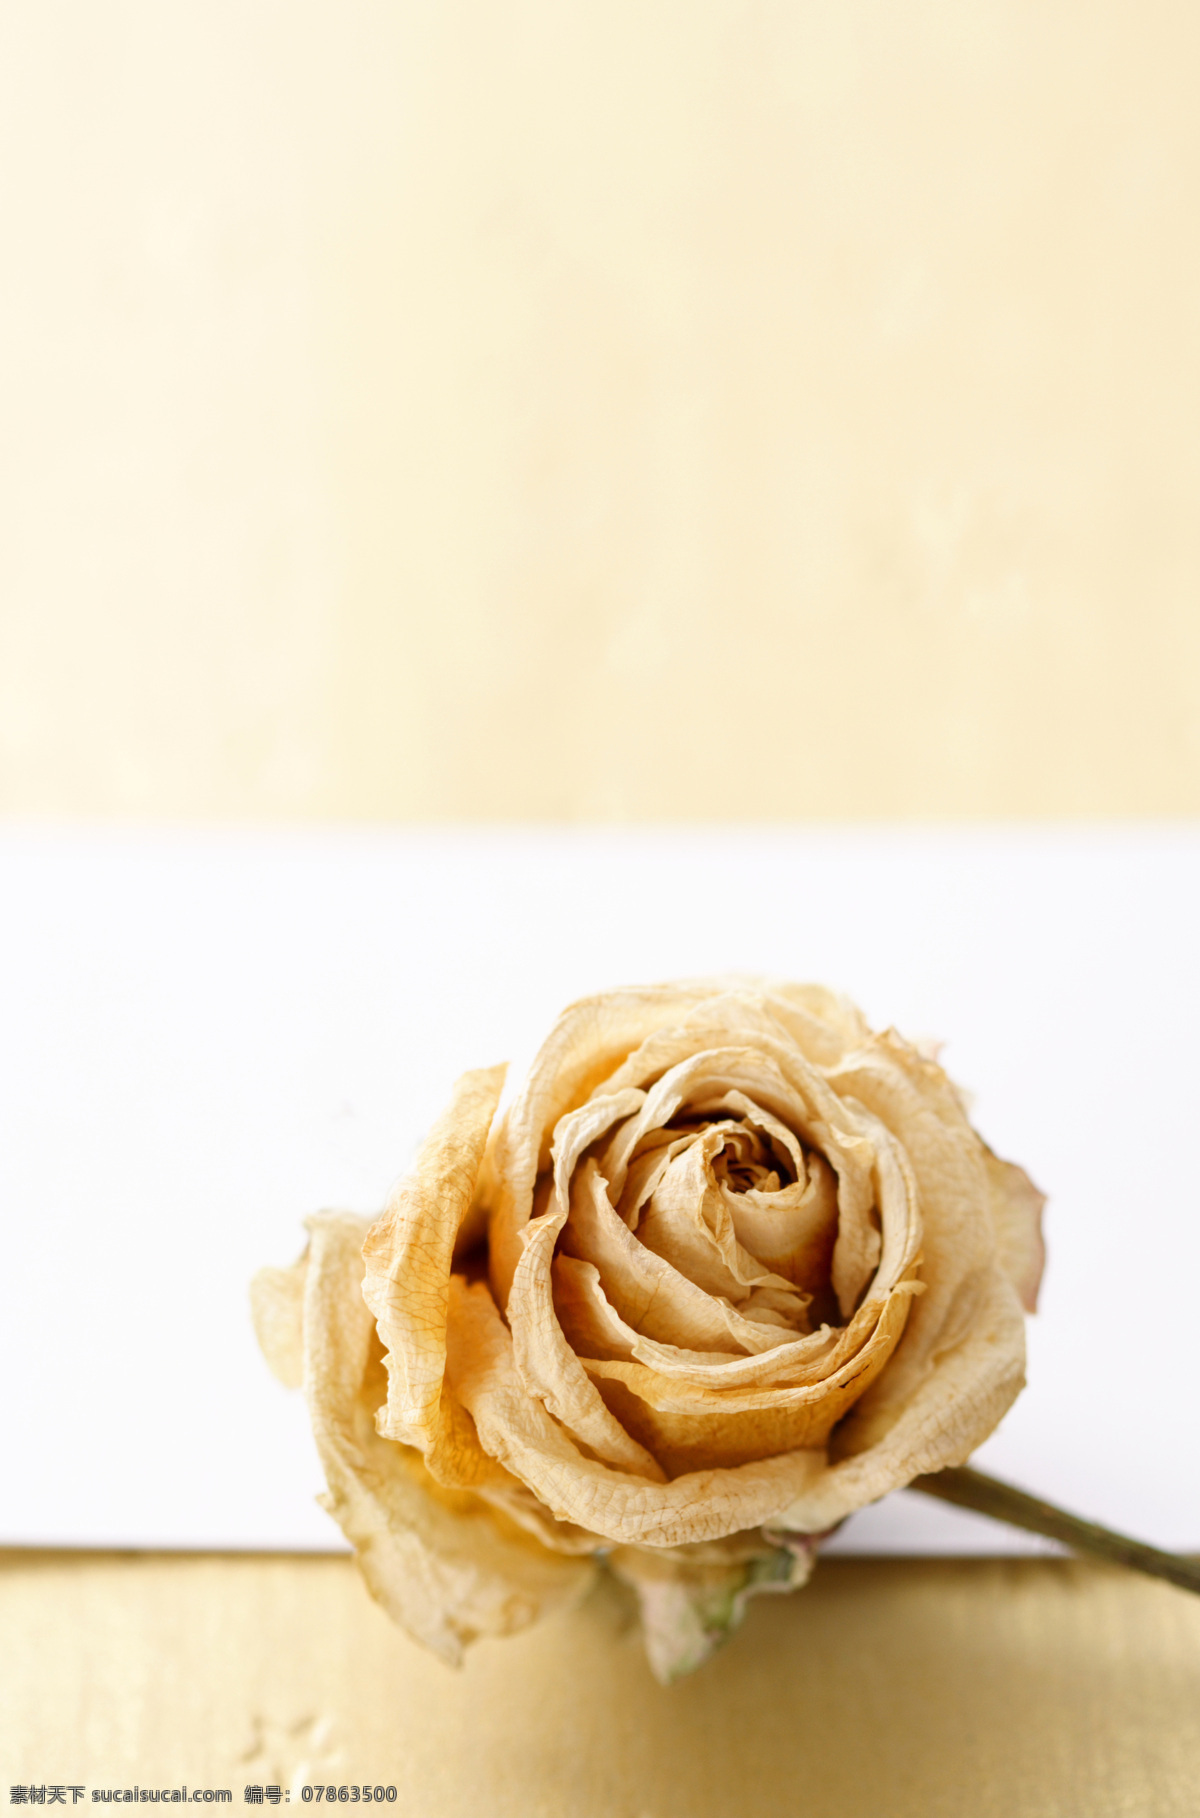 金色 玫瑰花 背景 花朵 美丽鲜花 金色玫瑰 婚礼素材 婚庆素材 情人节背景 其他类别 生活百科